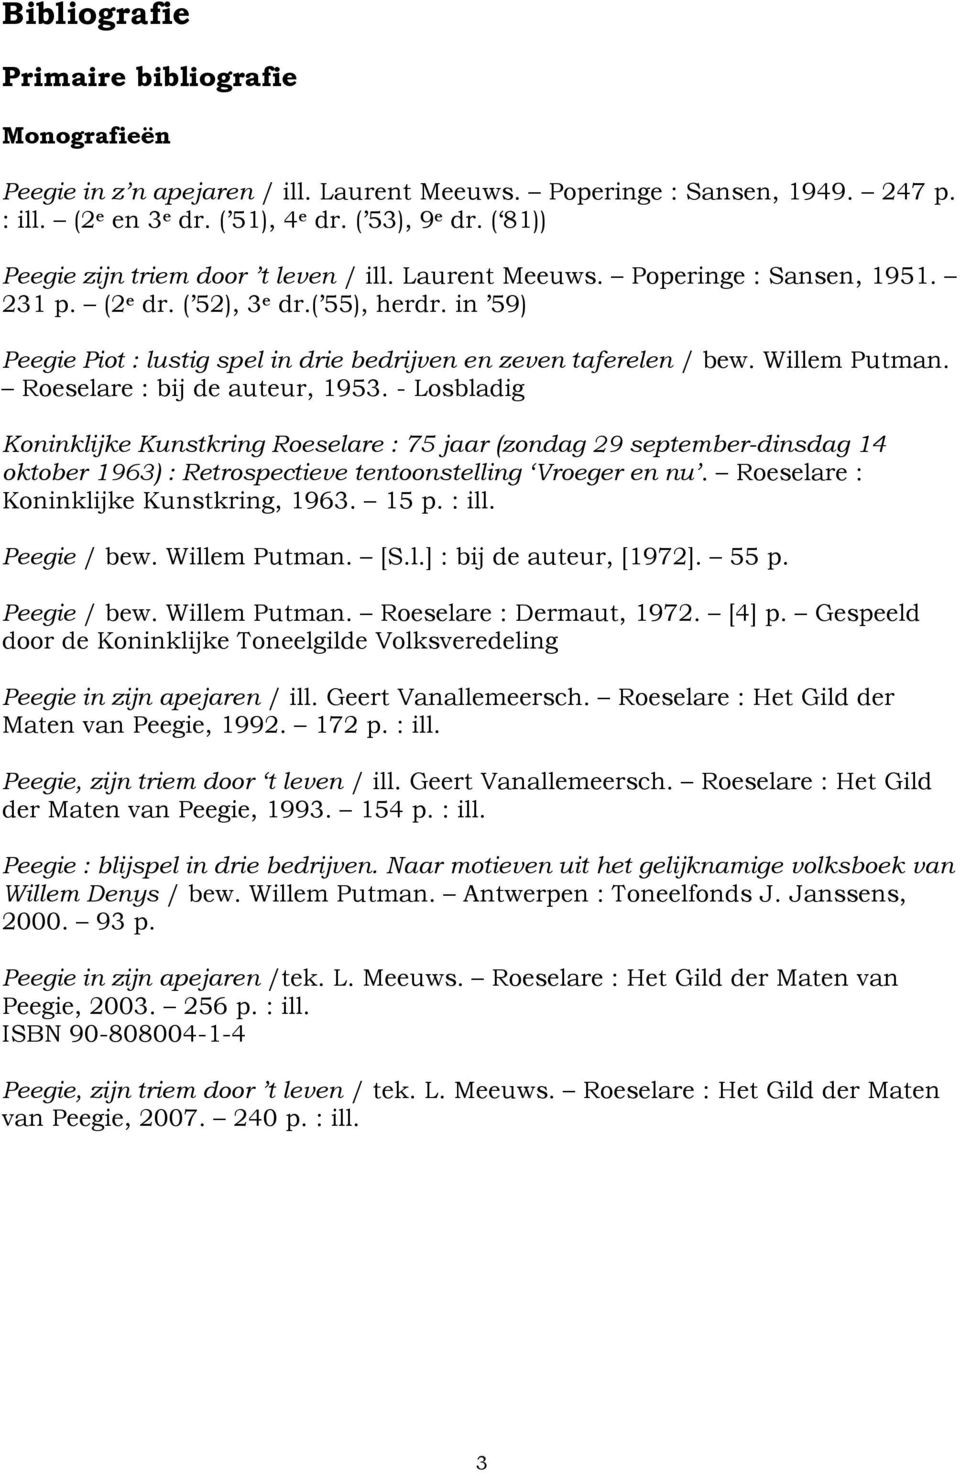 in 59) Peegie Piot : lustig spel in drie bedrijven en zeven taferelen / bew. Willem Putman. Roeselare : bij de auteur, 1953.